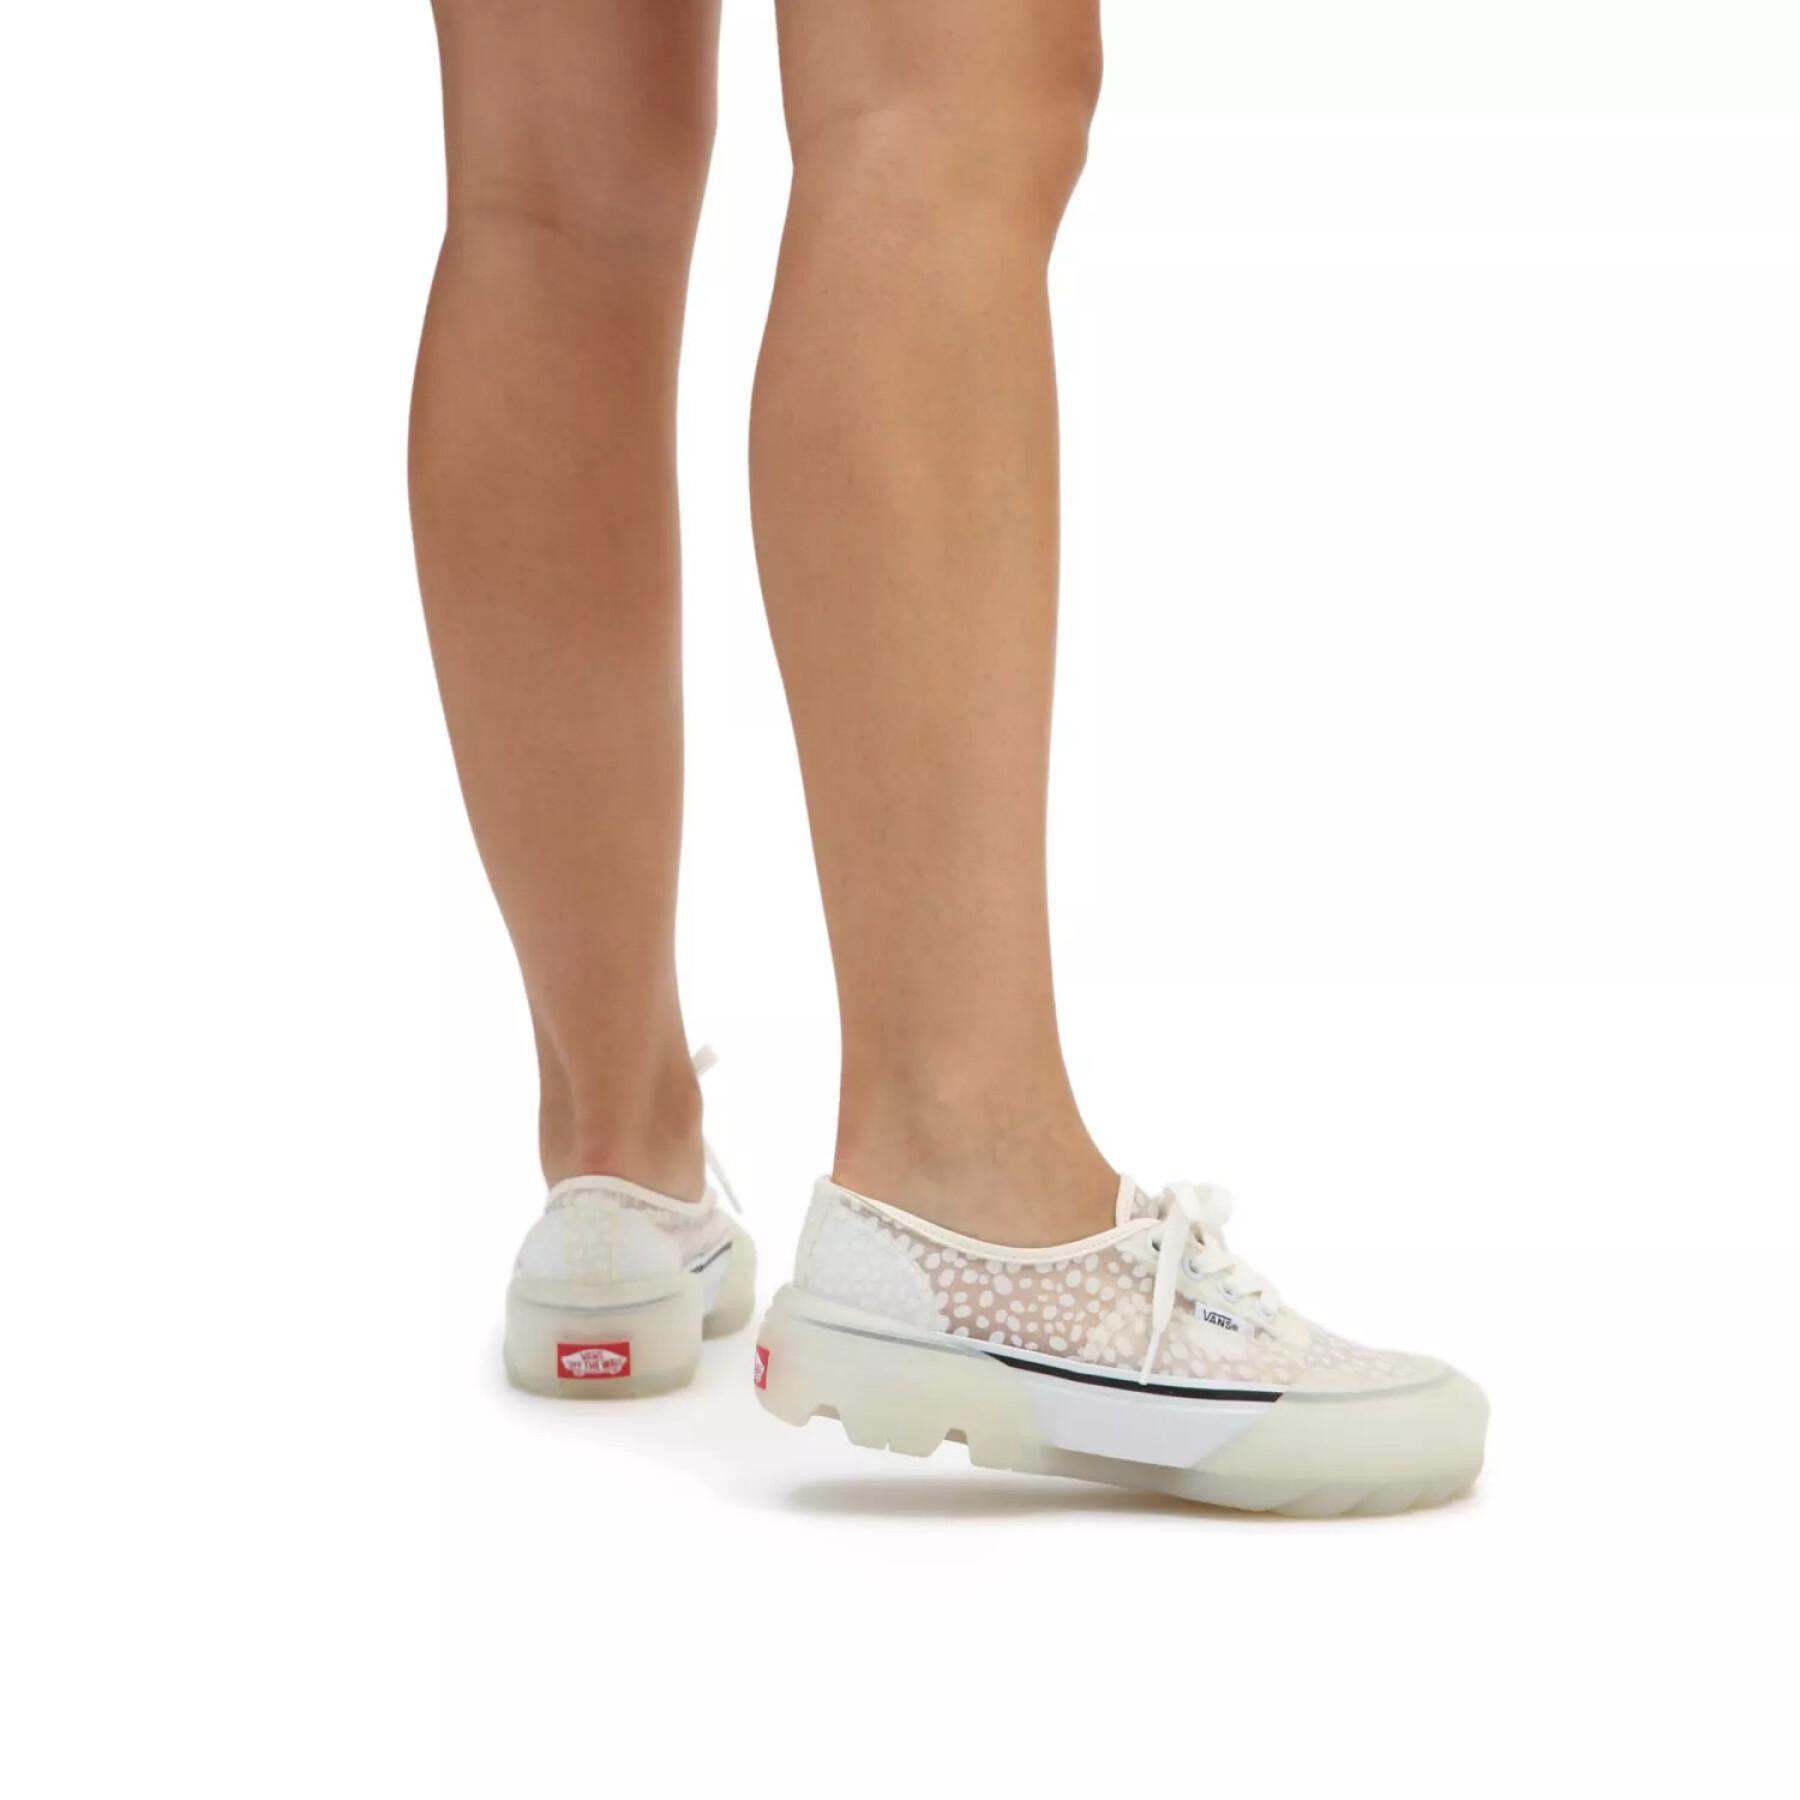 Women's sneakers Vans Authentic Mesh DX Dots